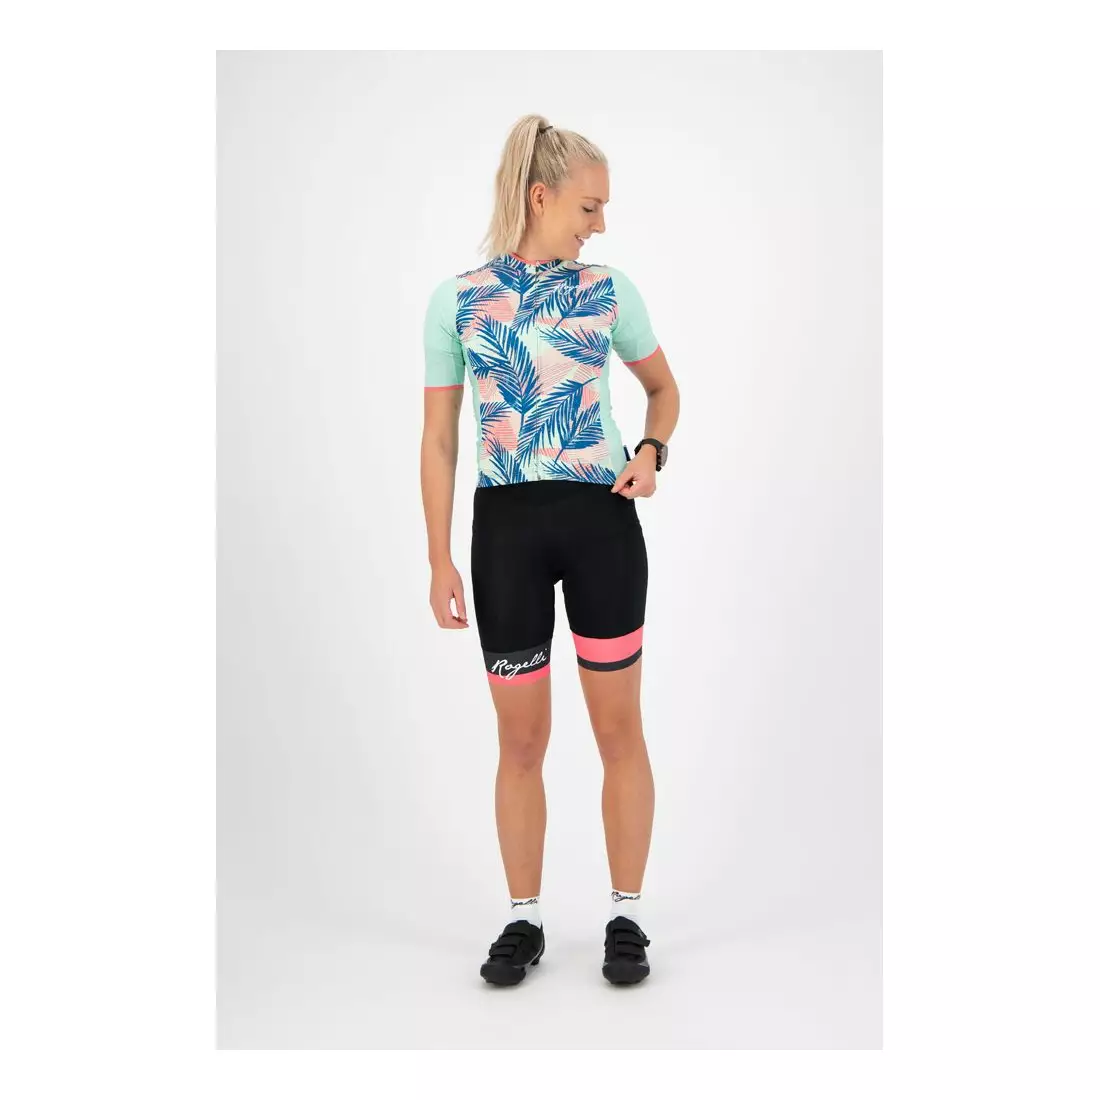 ROGELLI women's cycling jersey LEAF mint 010.087